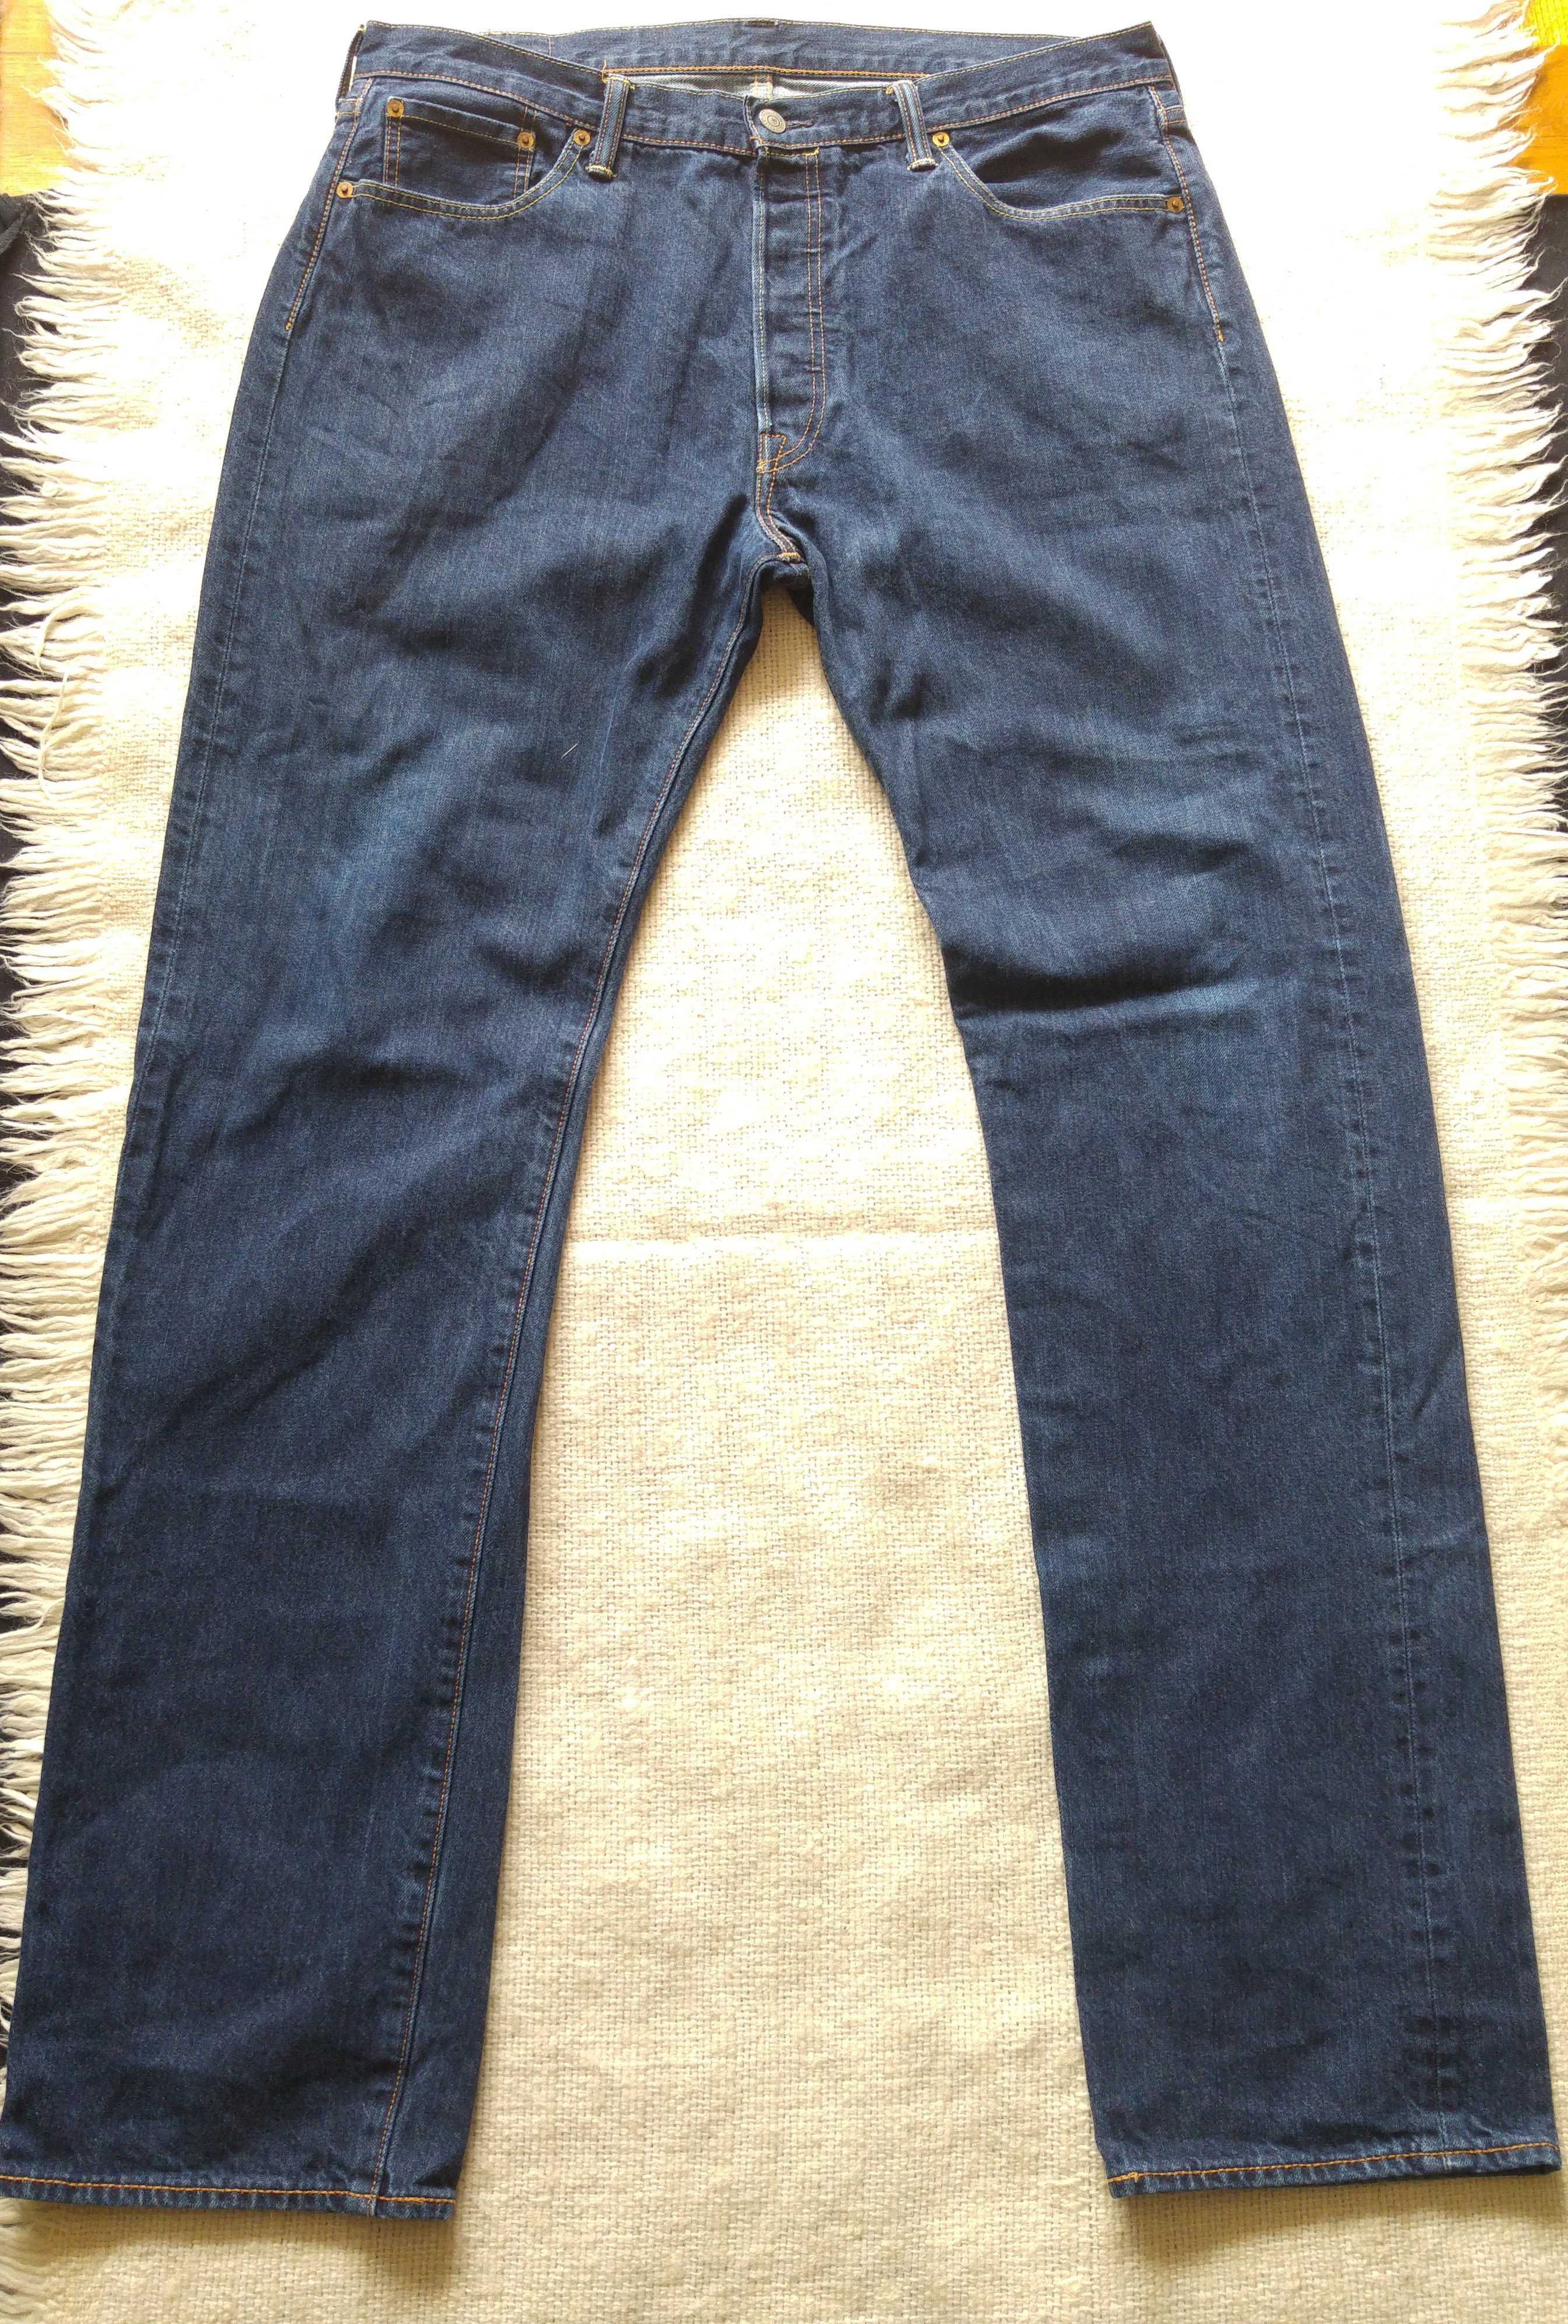 Spodnie męskie jeans Levis